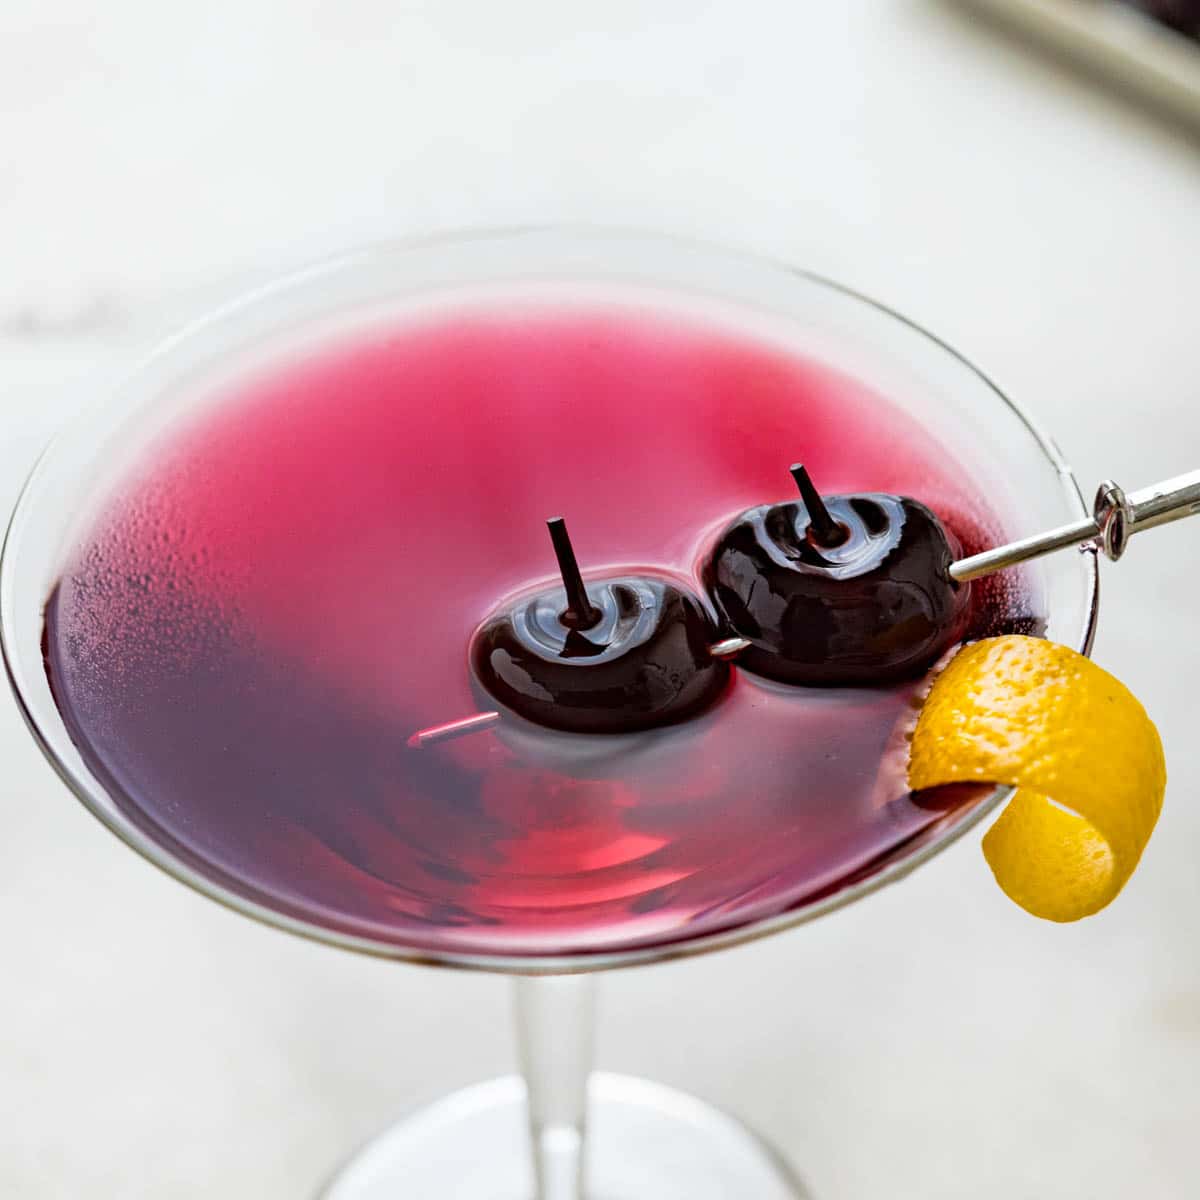 cherry martini in a martini glass.